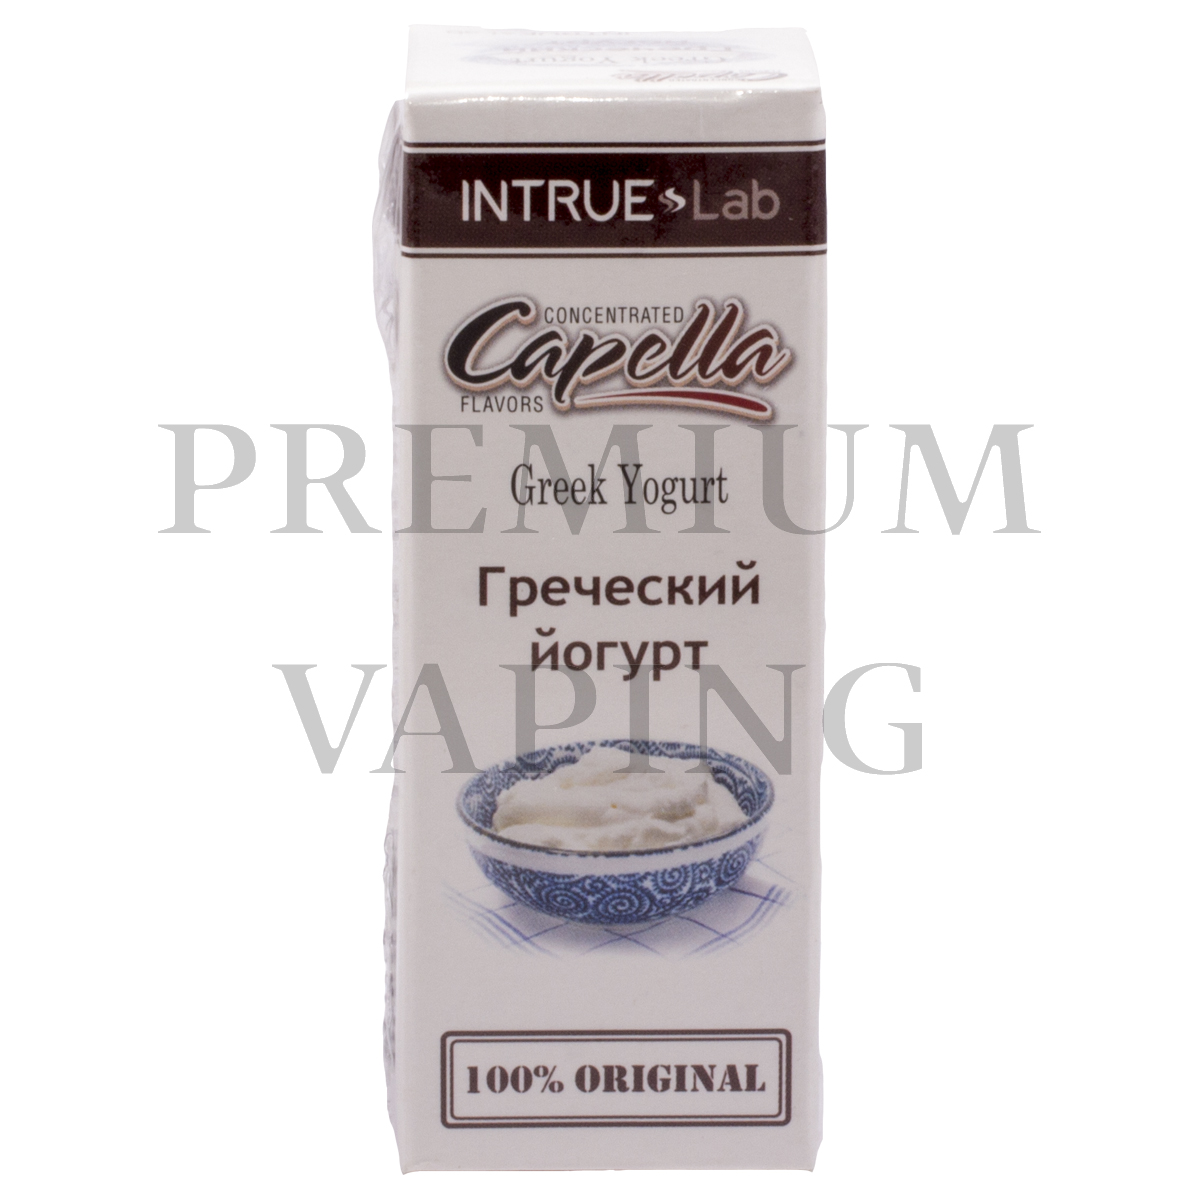 Capella Intrue Lab — Greek Yogurt